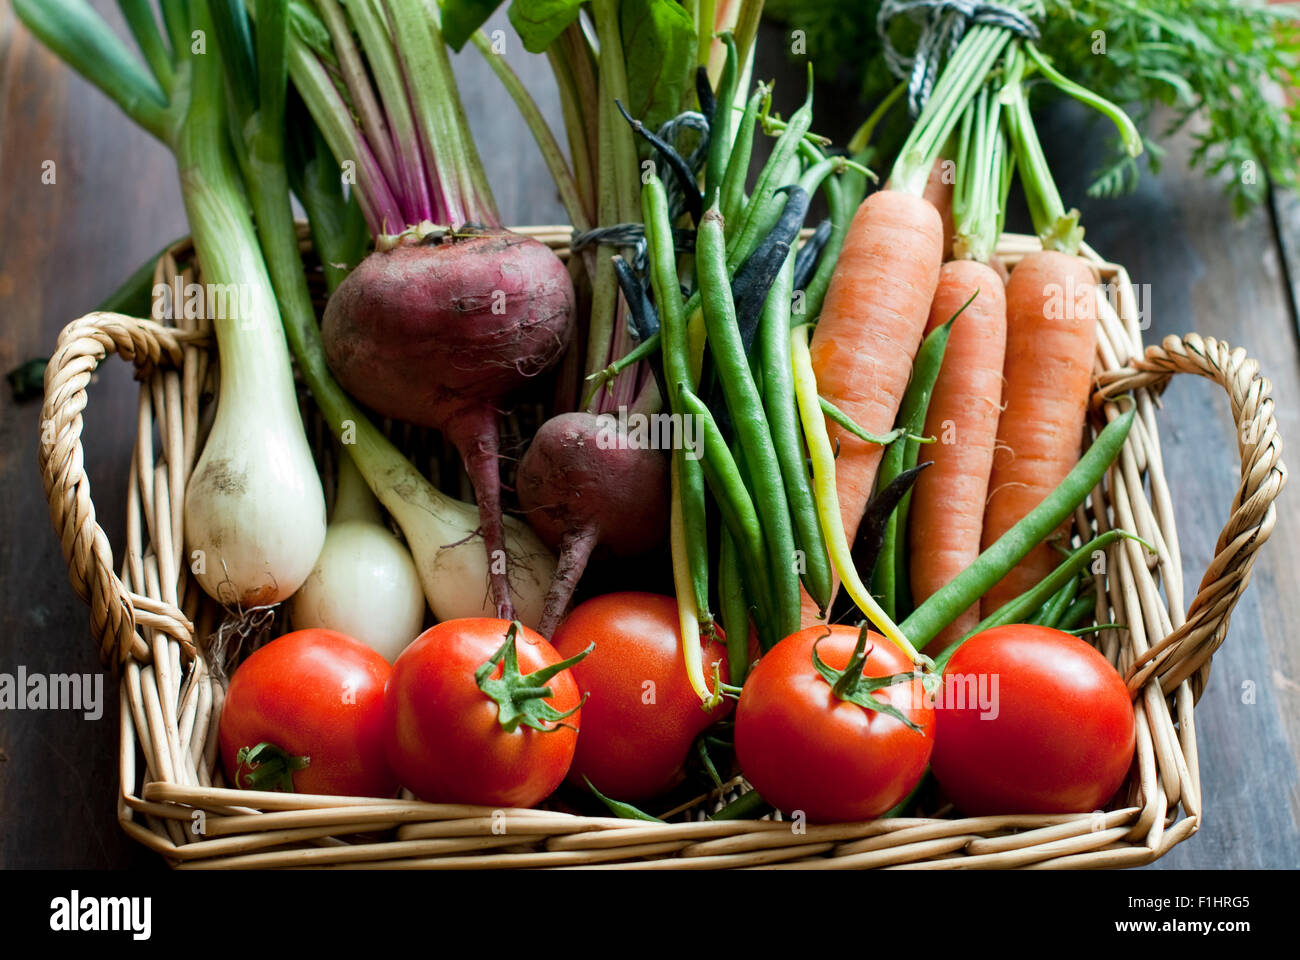 Verduras de verano orgánicos incluyendo tomates, frijoles, remolacha, cebolla y zanahorias con frondosos tops en una cesta de mimbre. Foto de stock